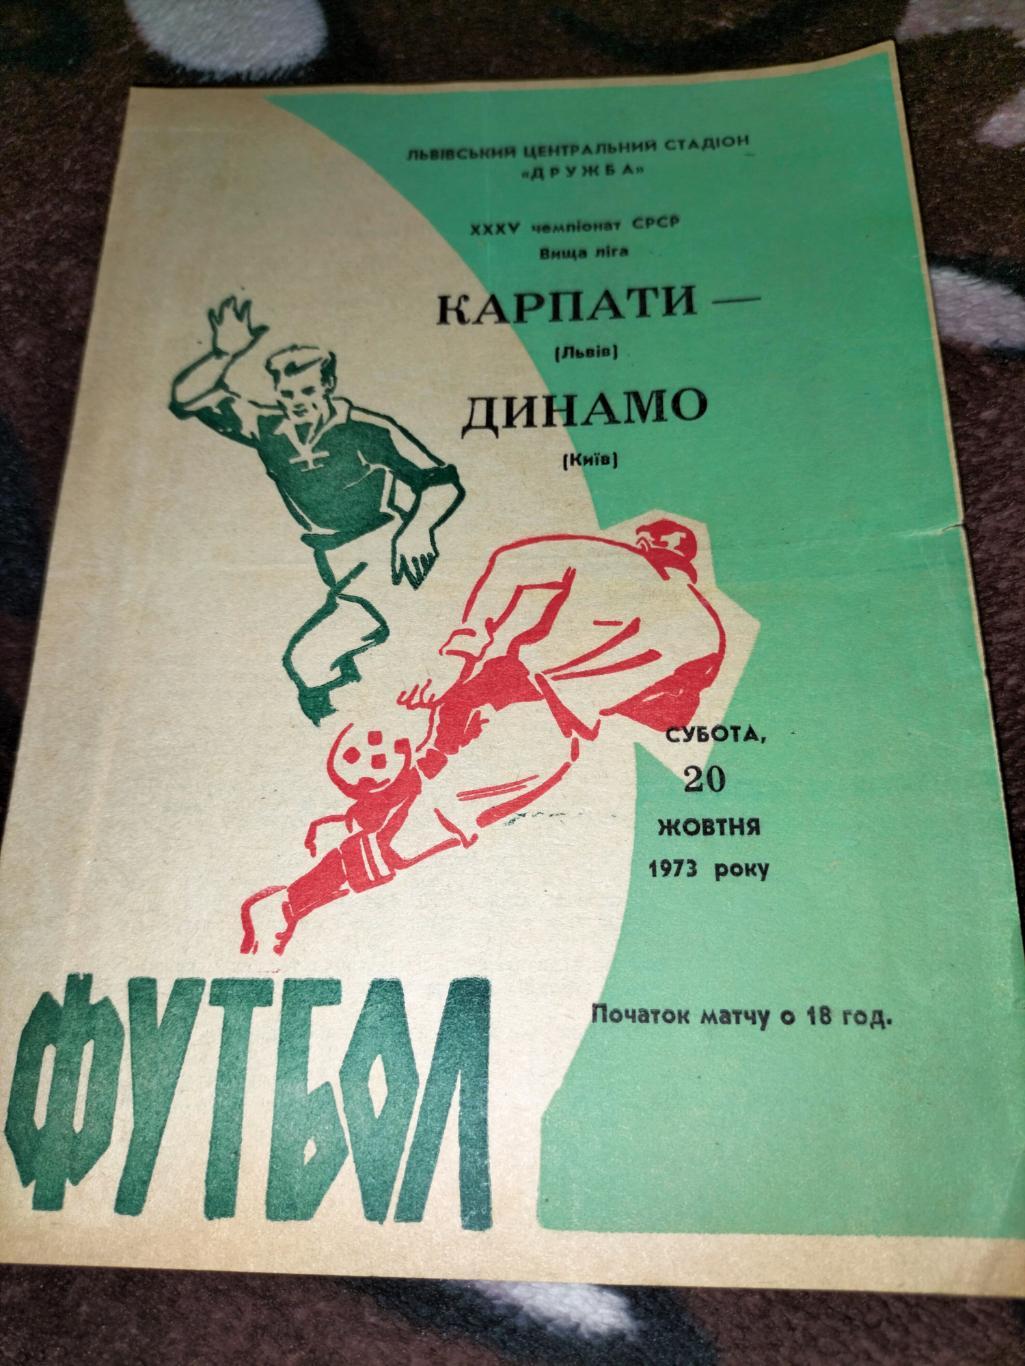 Карпати Львів -Динамо Київ 1973 1